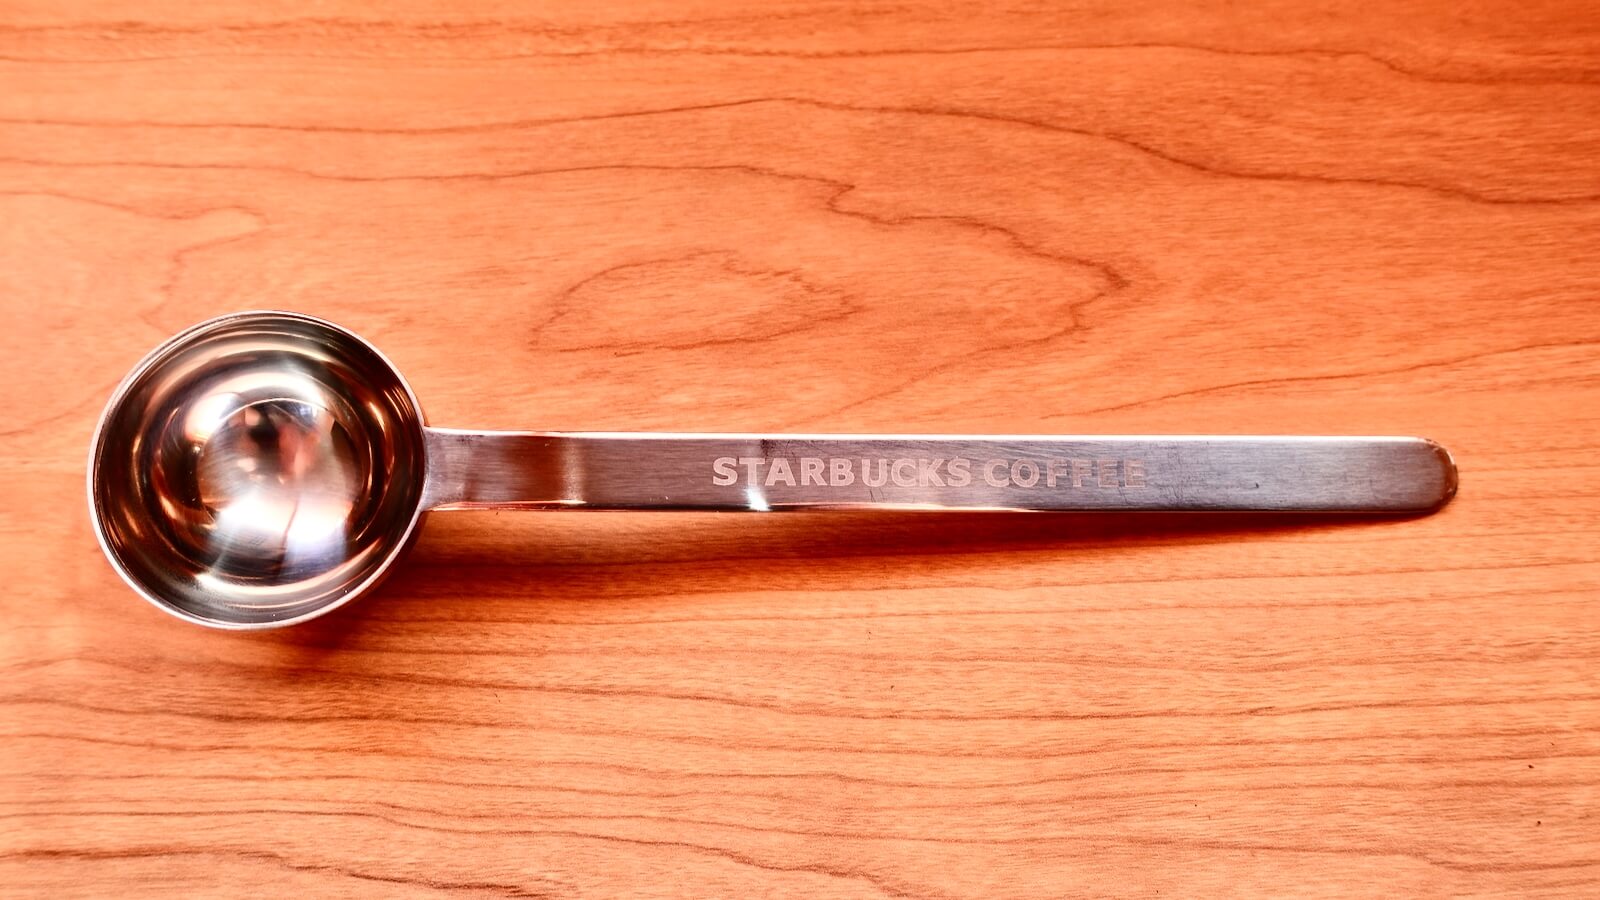 Starbucks Espresso Kit Measuring Spoon